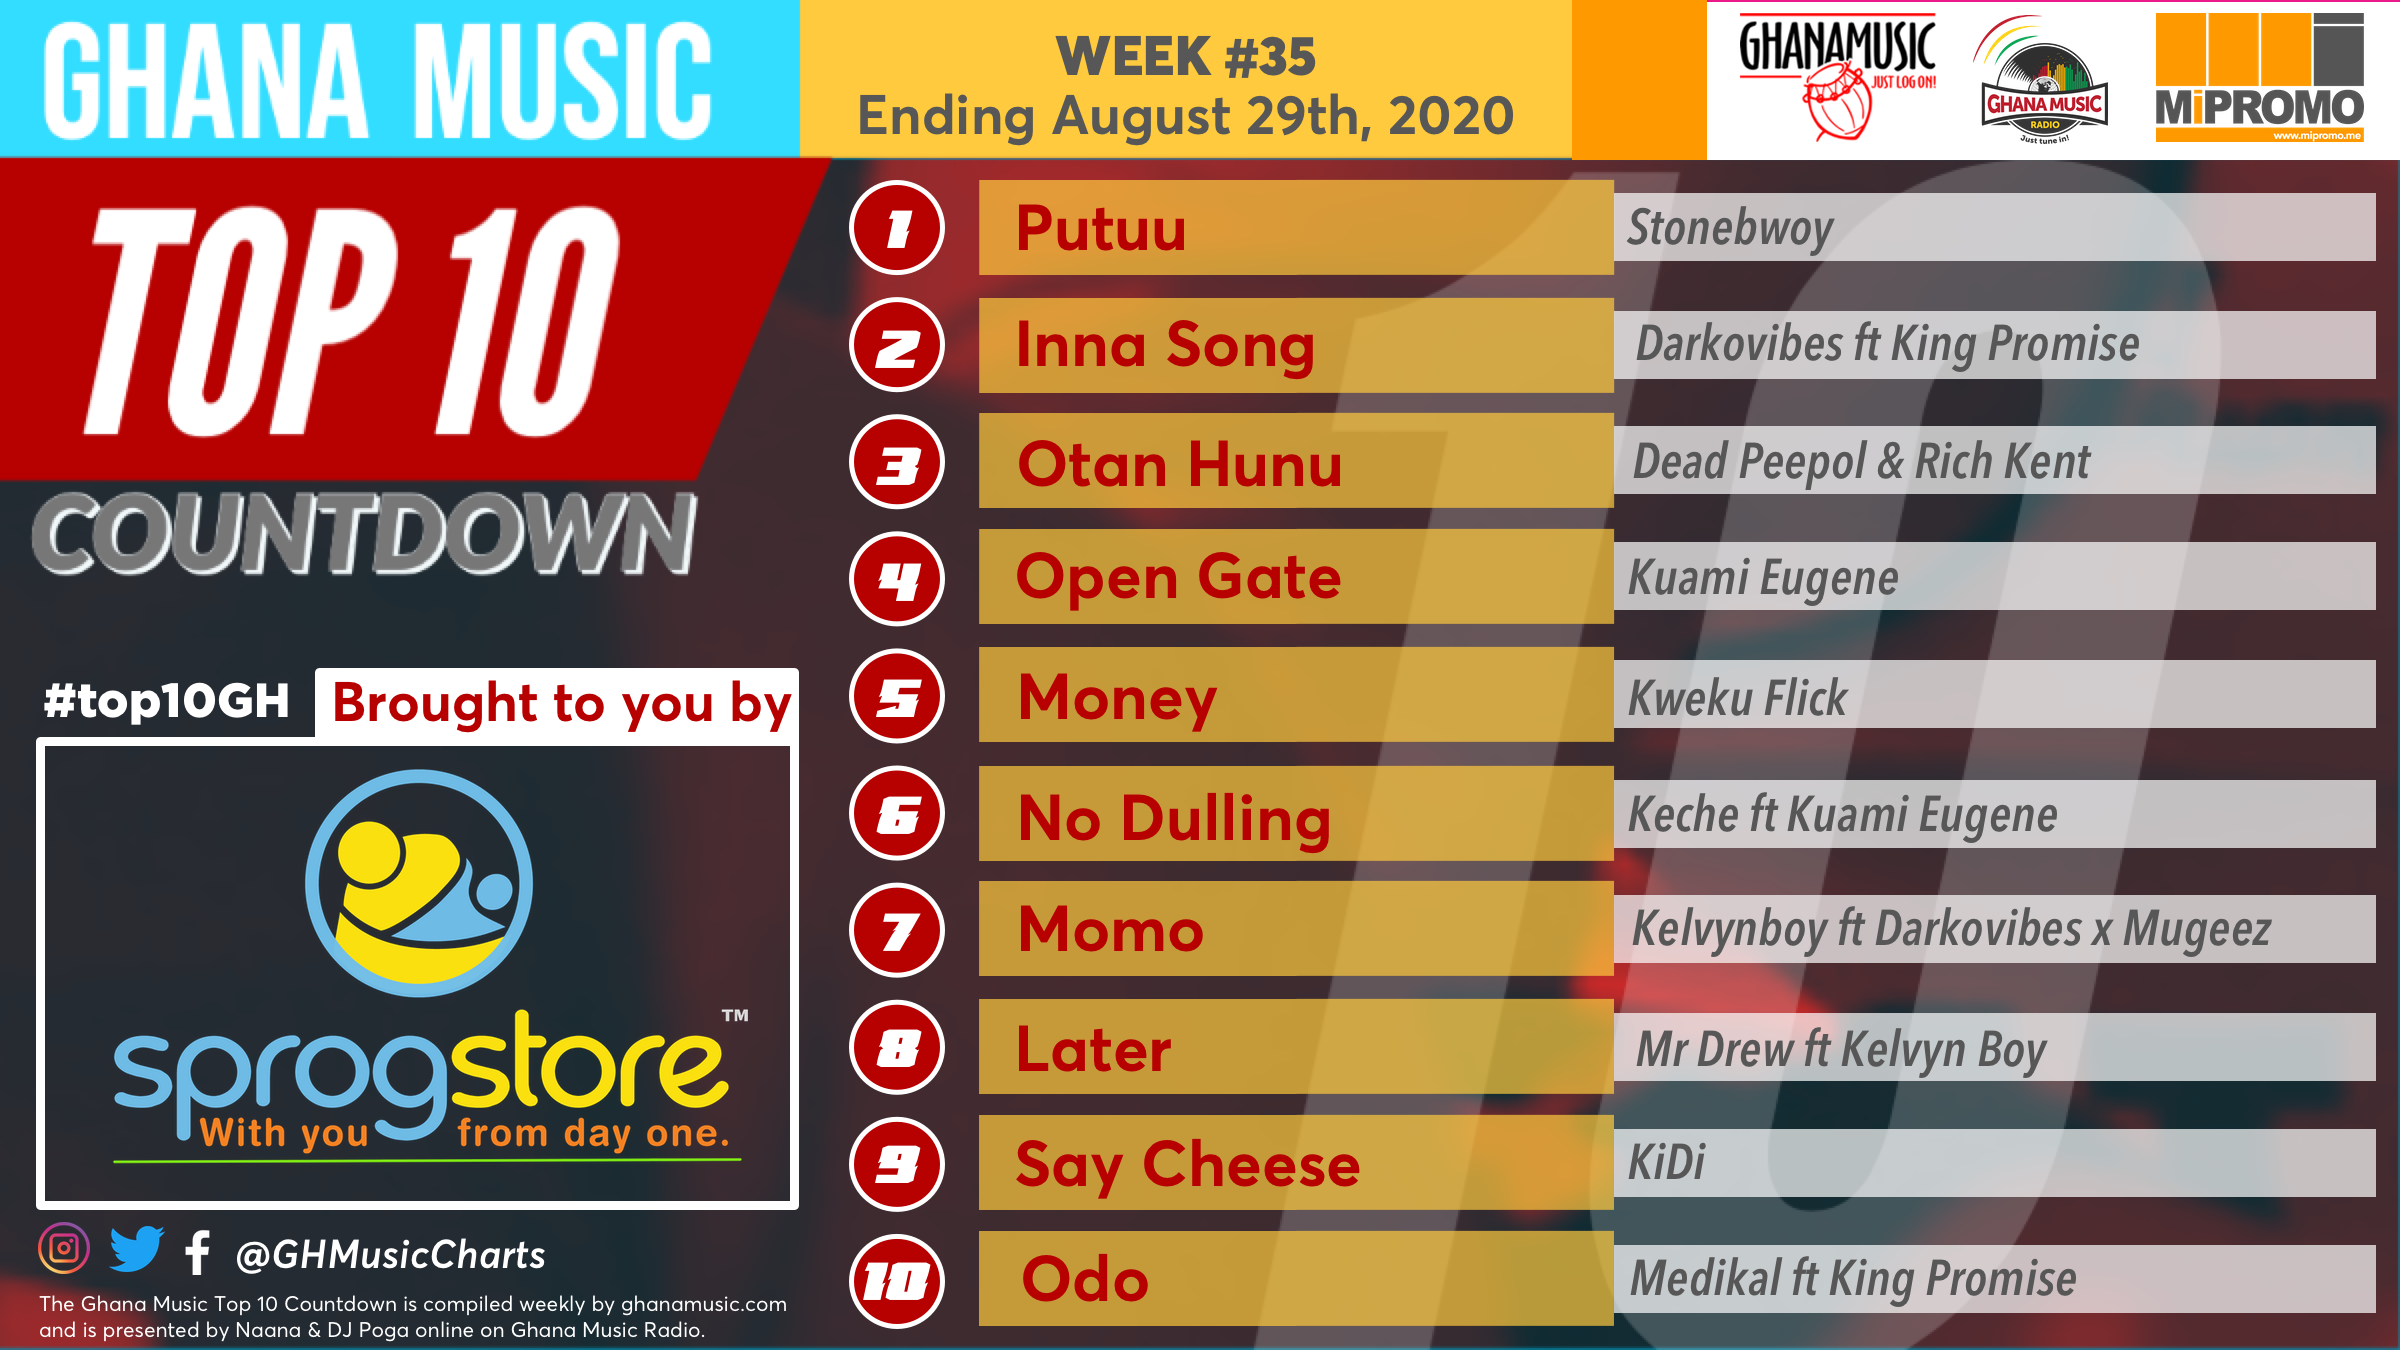 2020 Week 34: Ghana Music Top 10 Countdown